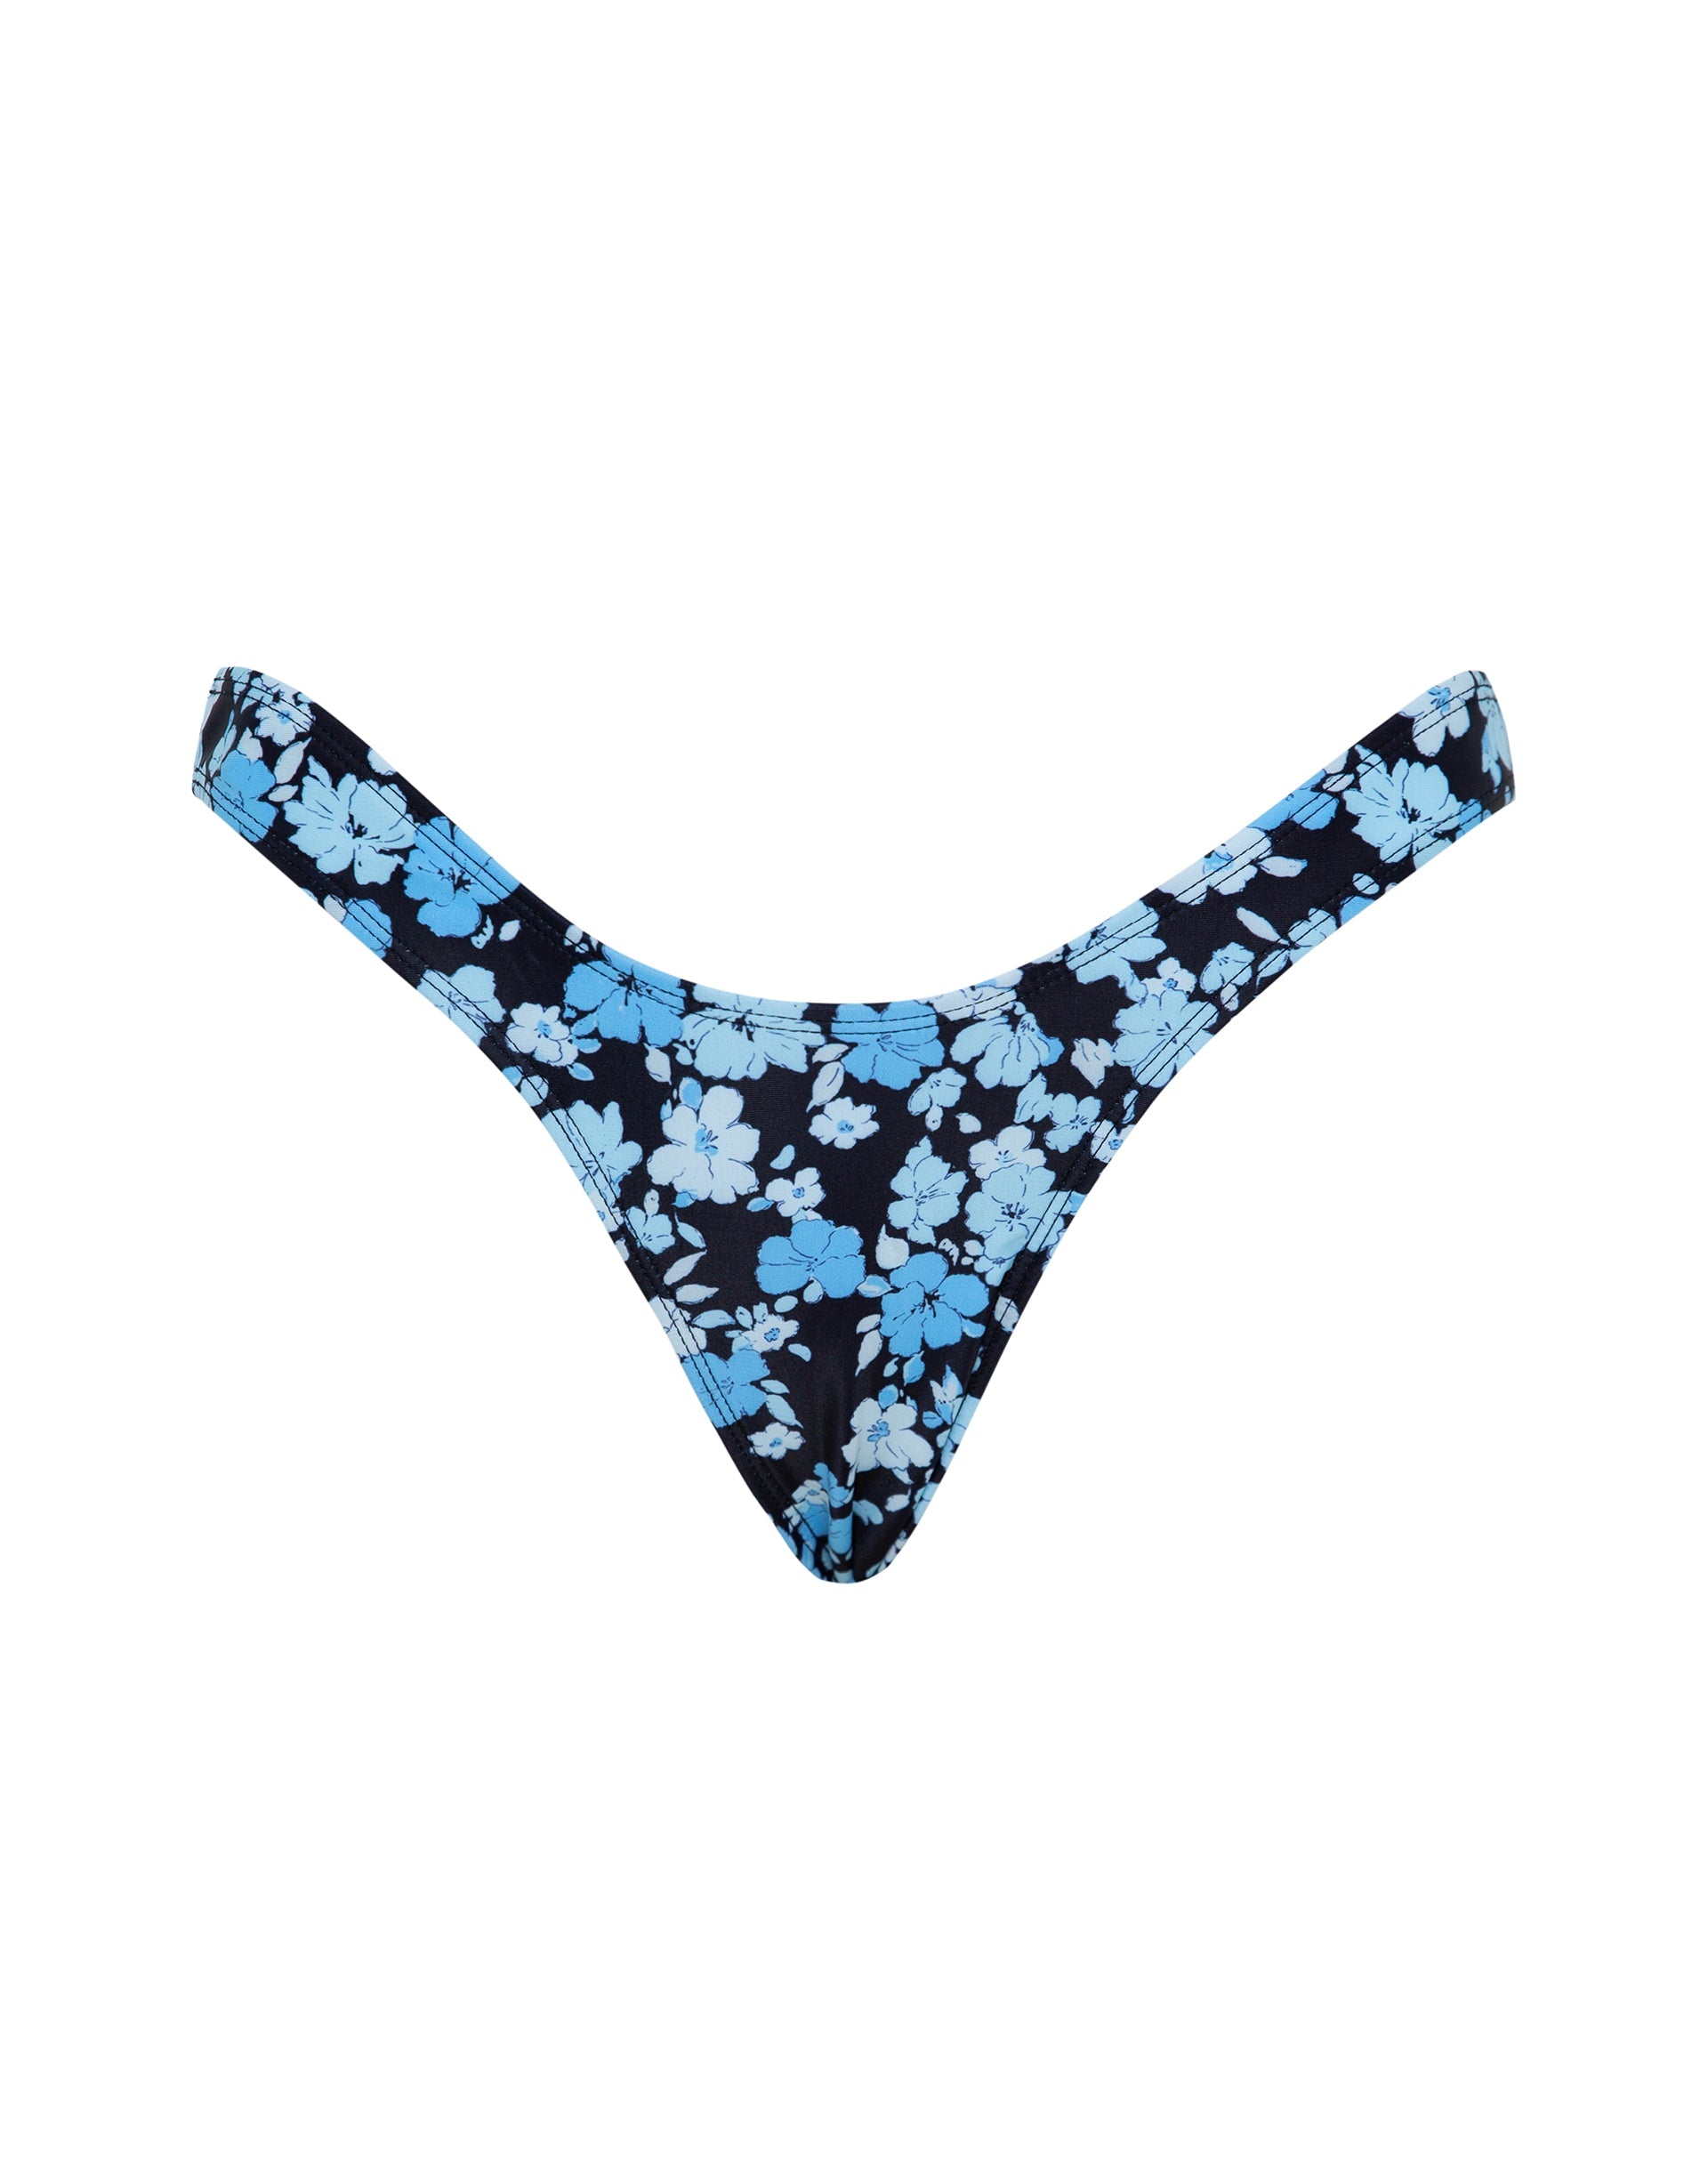 Imagen de la braguita de bikini Farida en azul pastel floral